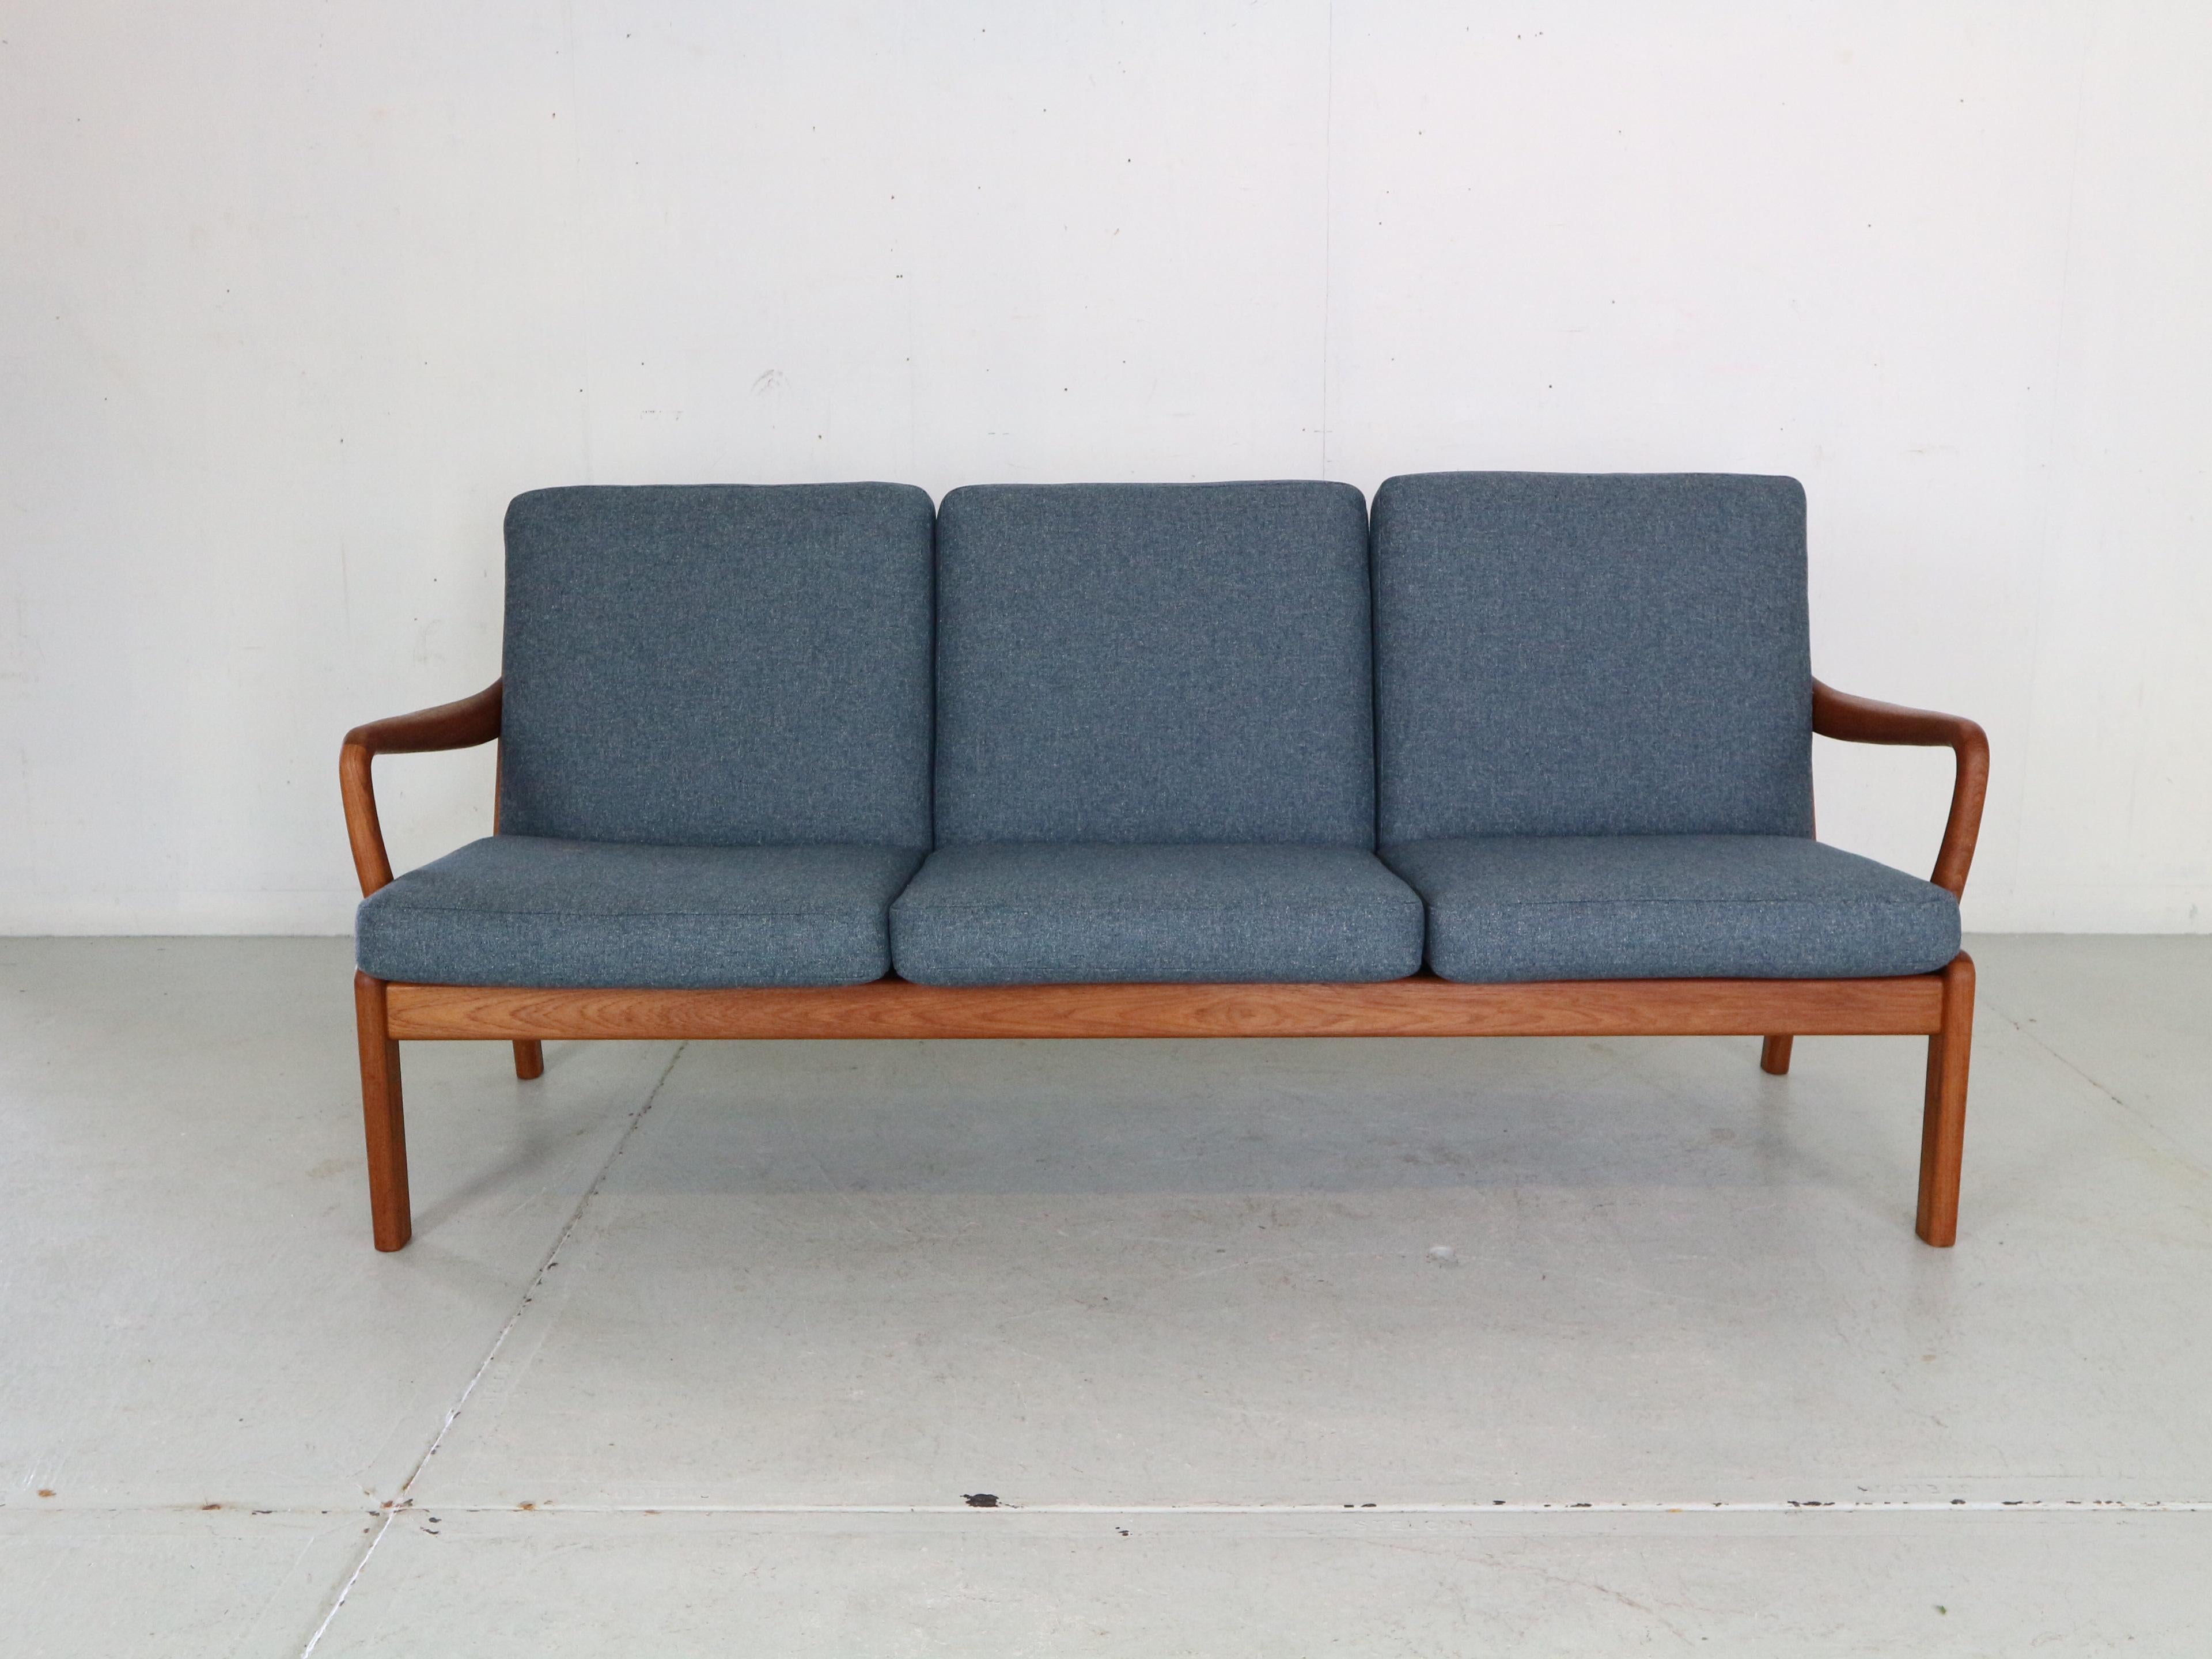 Magnifique canapé danois moderne à trois places conçu et fabriqué par I.L.Ane. 
Fabrice présente un design danois organique typique des années 1960, un cadre en teck massif et un nouveau rembourrage de haute qualité en tissu de laine bleu.
Un